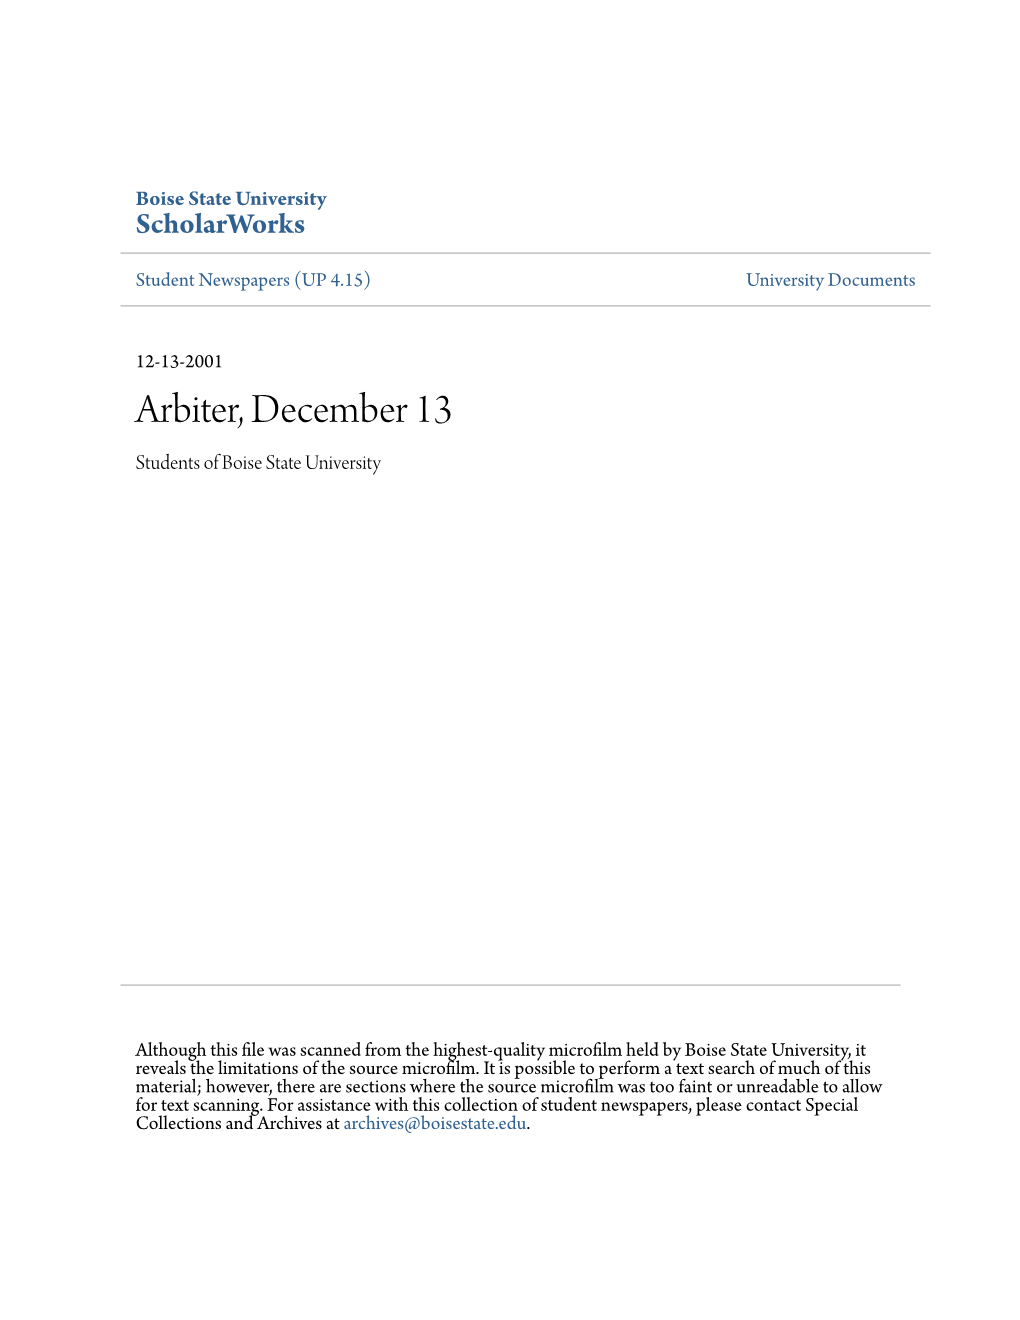 Arbiter, December 13 Students of Boise State University